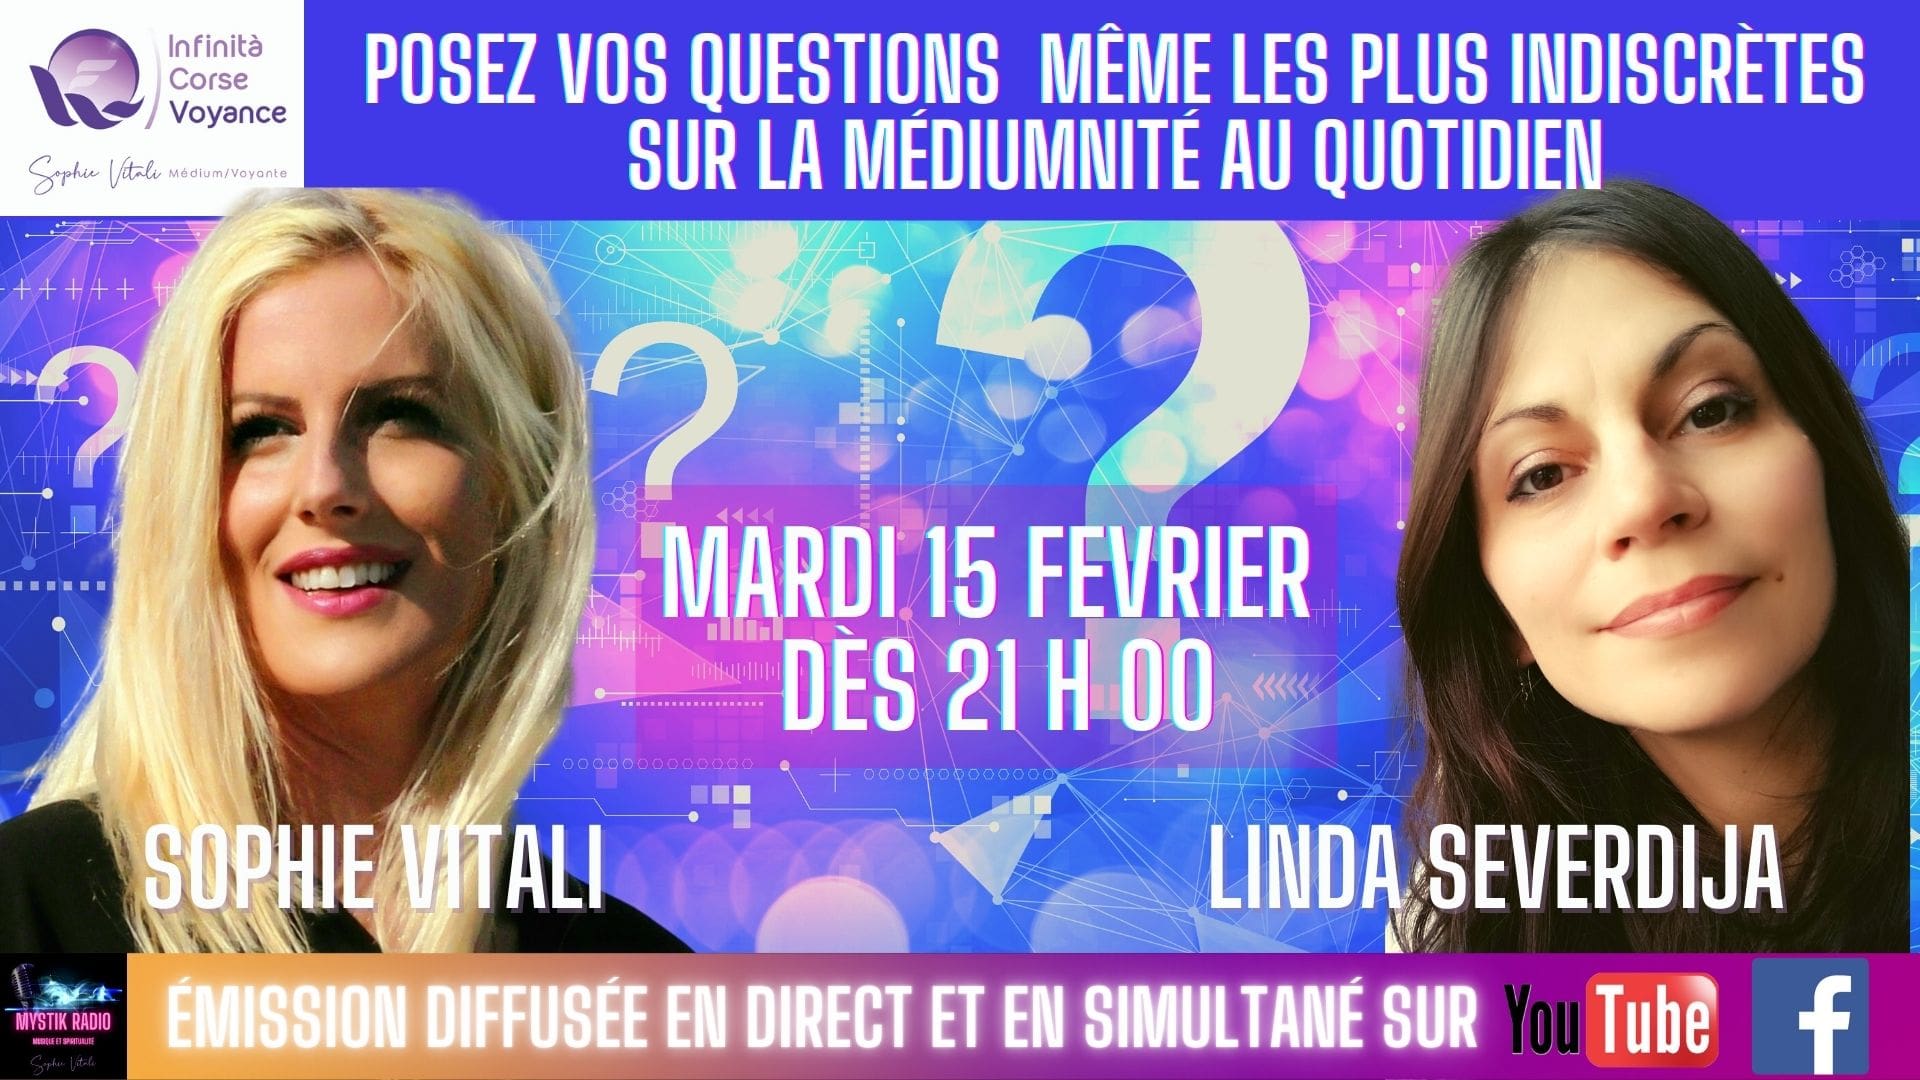 La médiumnité au quotidien ? Sophie Vitali & Linda Servidija répondent à vos questions même les plus indiscrètes ! 15.02.2022